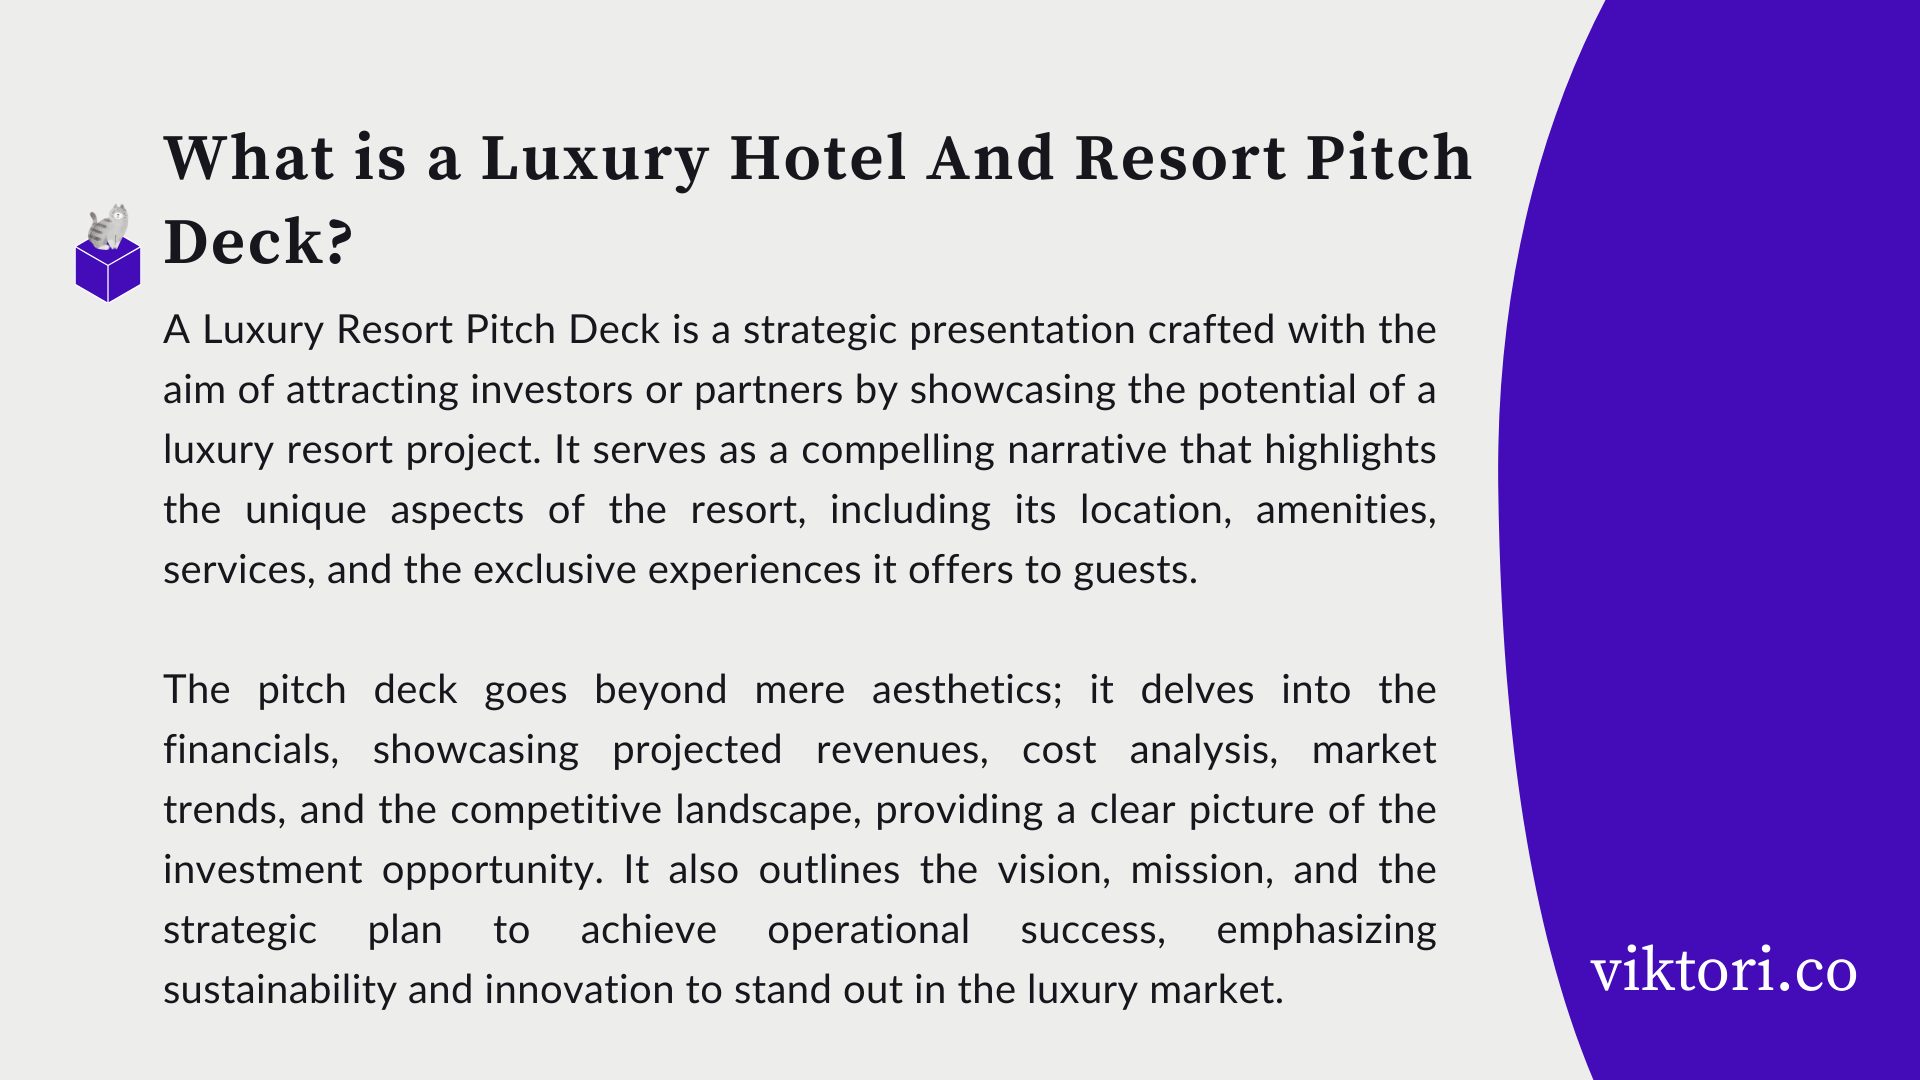 Luxury hotel resort pitch deck definition